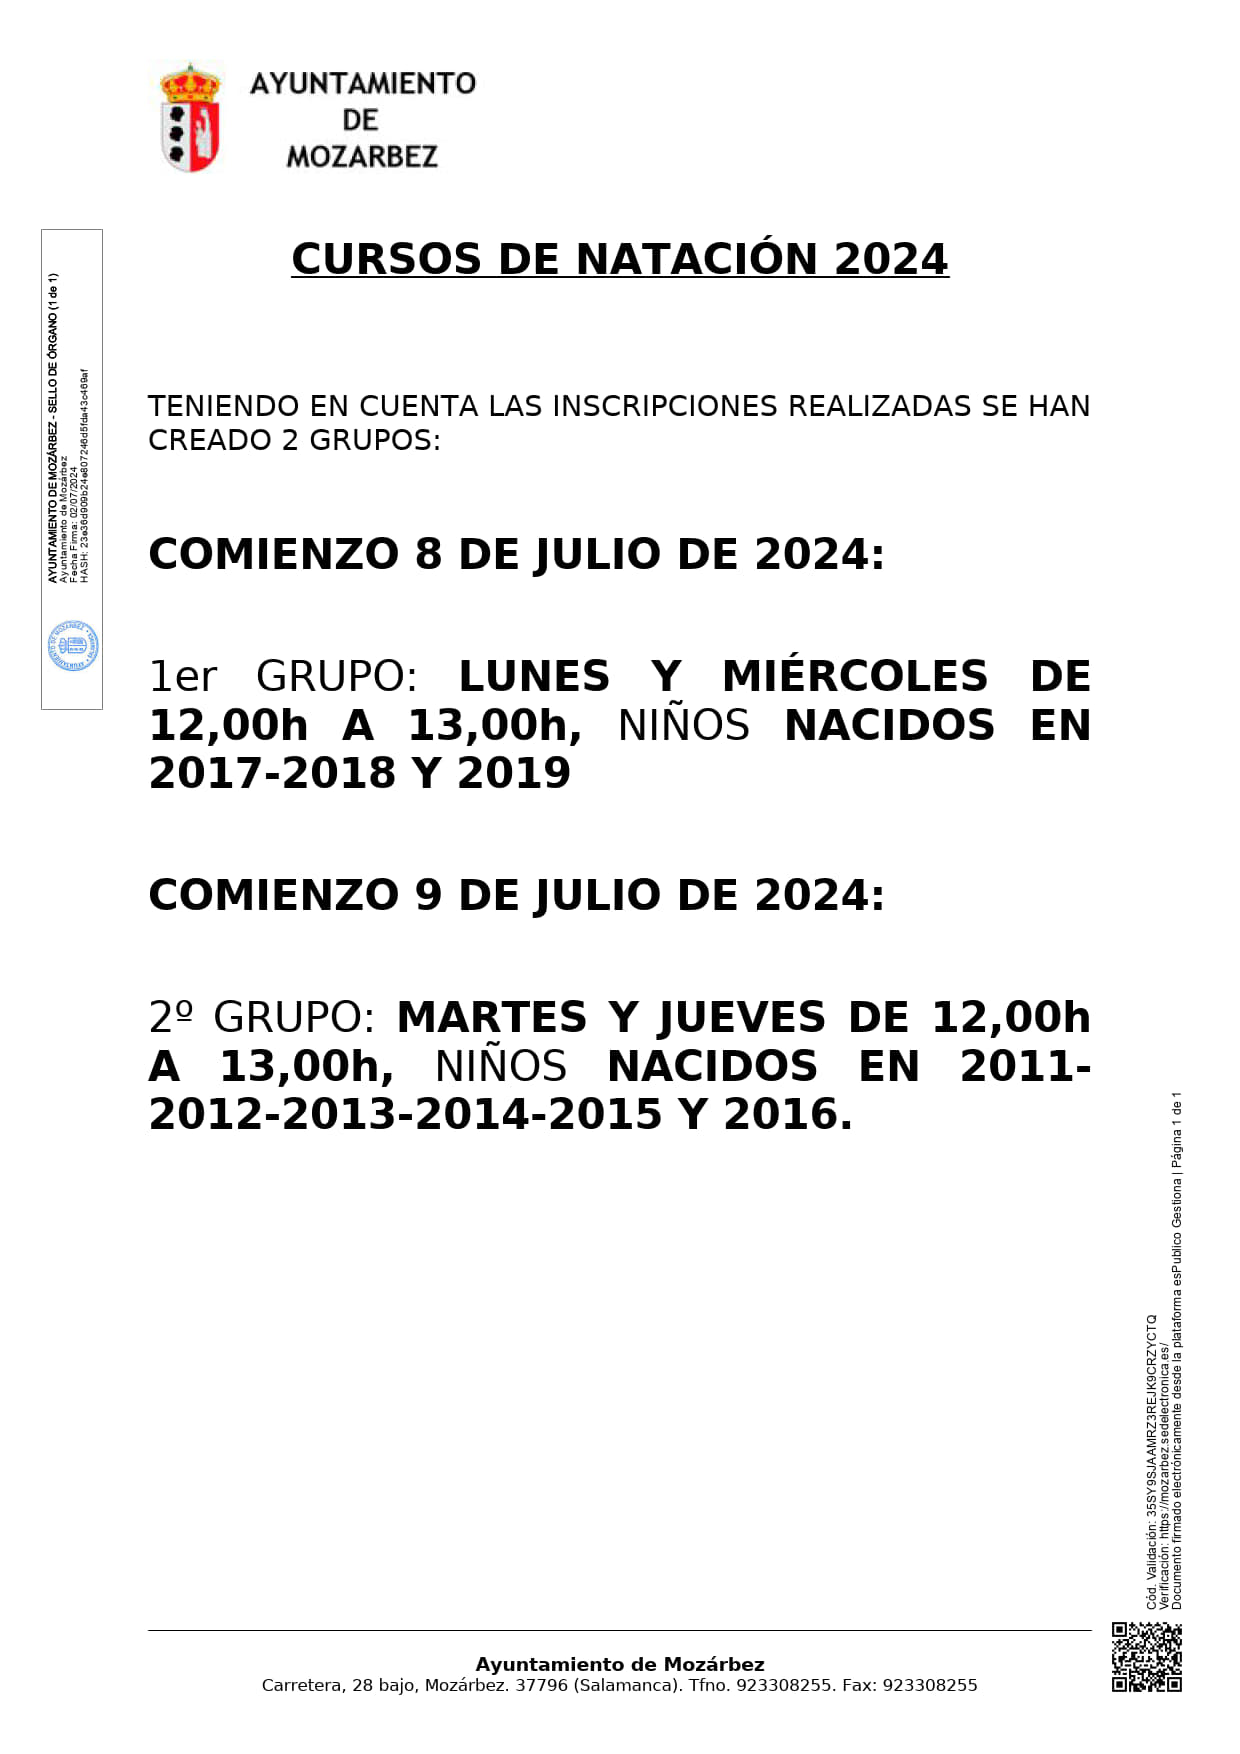 HORARIOS CURSOS DE NATACION 2024